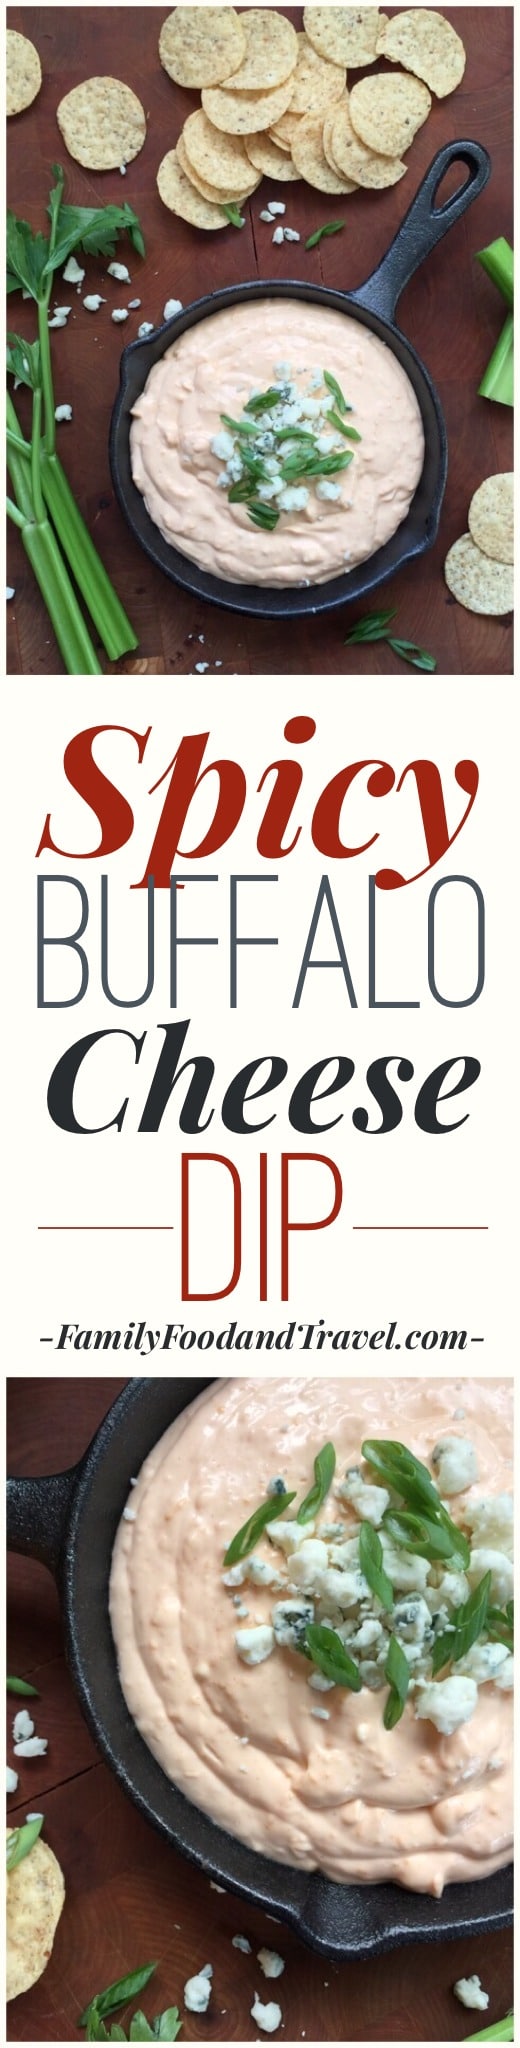 Spicy Buffalo Cheese Dip